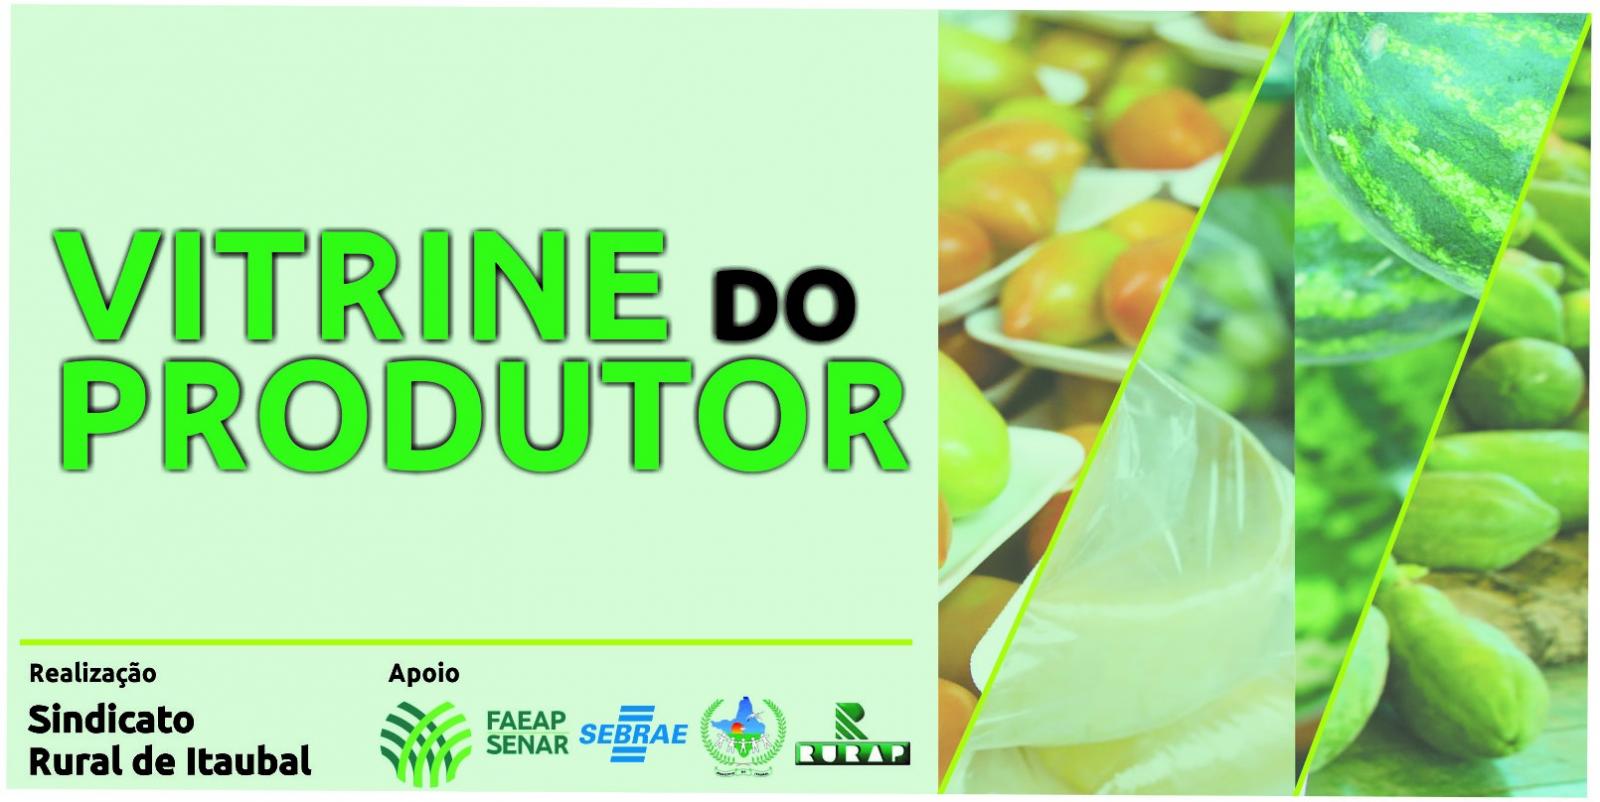 Sindicato Rural de Itaubal realiza primeira edição da feira “Vitrine do Produtor” de 2019